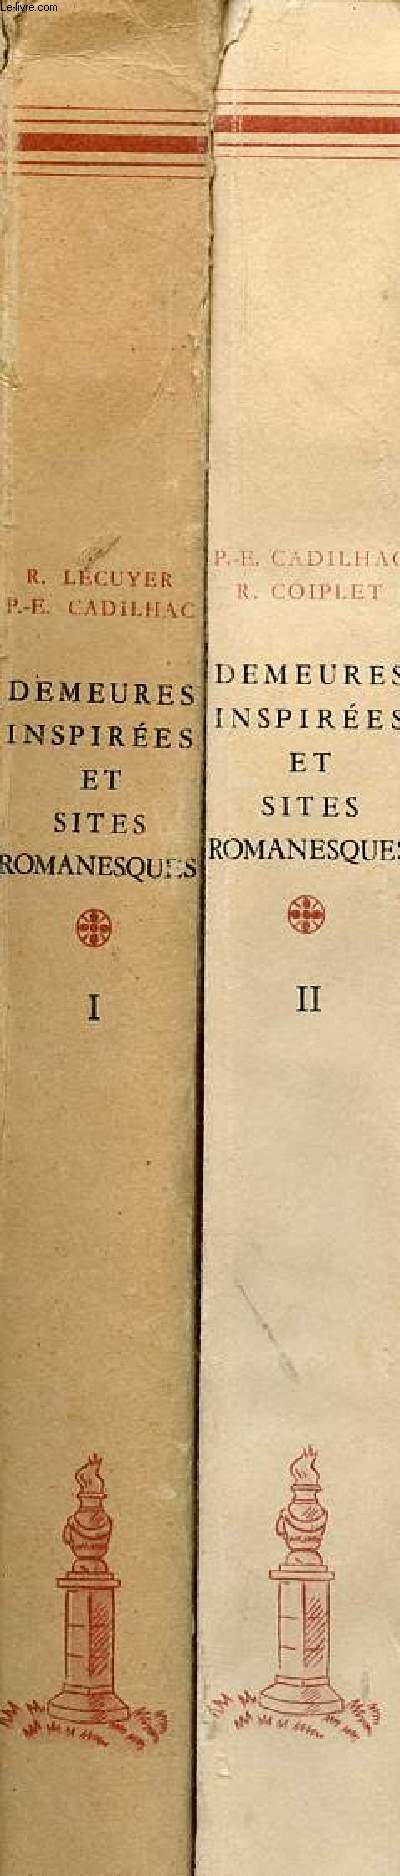 Demeures inspires et sites romanesques - En 2 tomes (2 volumes) - tomes 1 + 2.